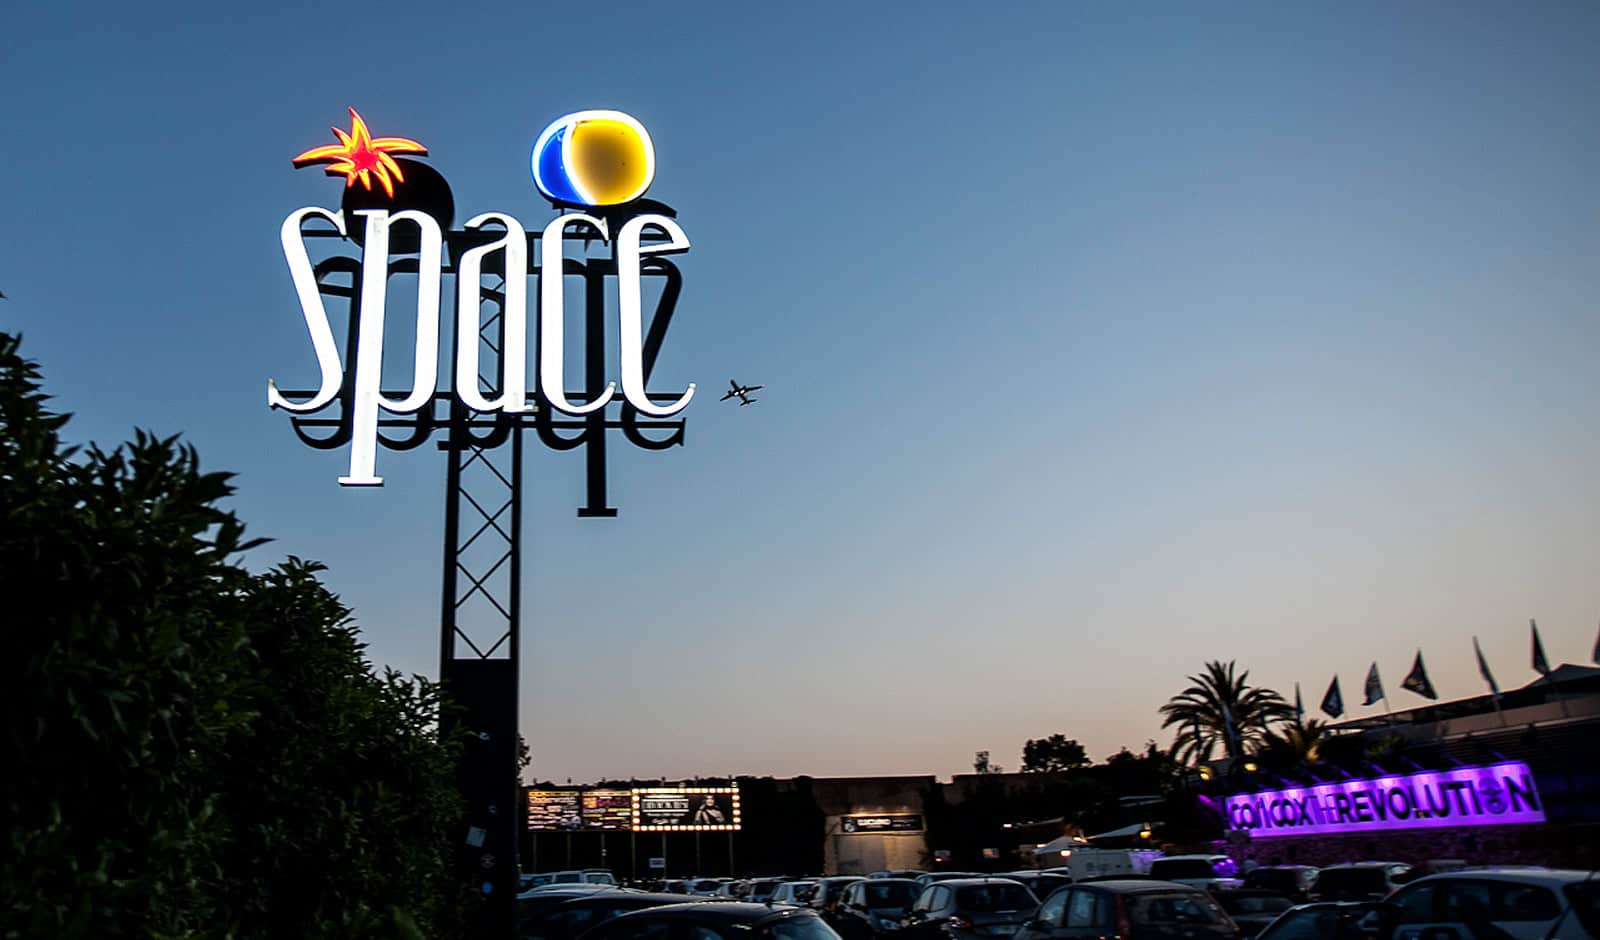 Space Ibiza sta per aprire un nuovo club, Space Riccione, in Italia